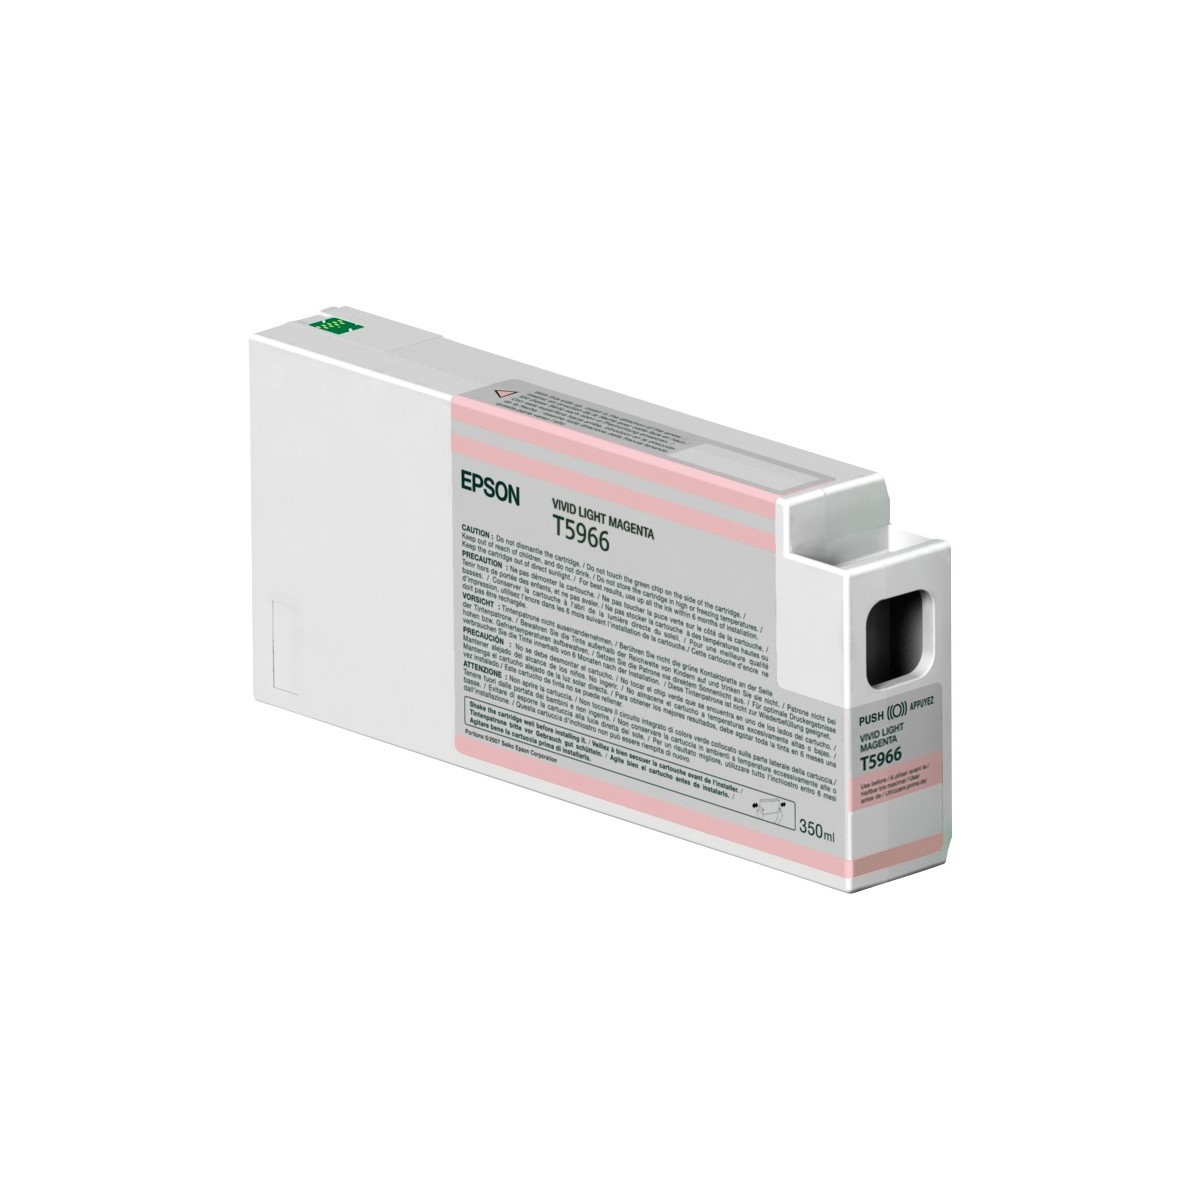 Epson Singlepack Vivid Light Magenta T596600 UltraChrome HDR 350 ml - Pigment-based ink - 1 pc(s)